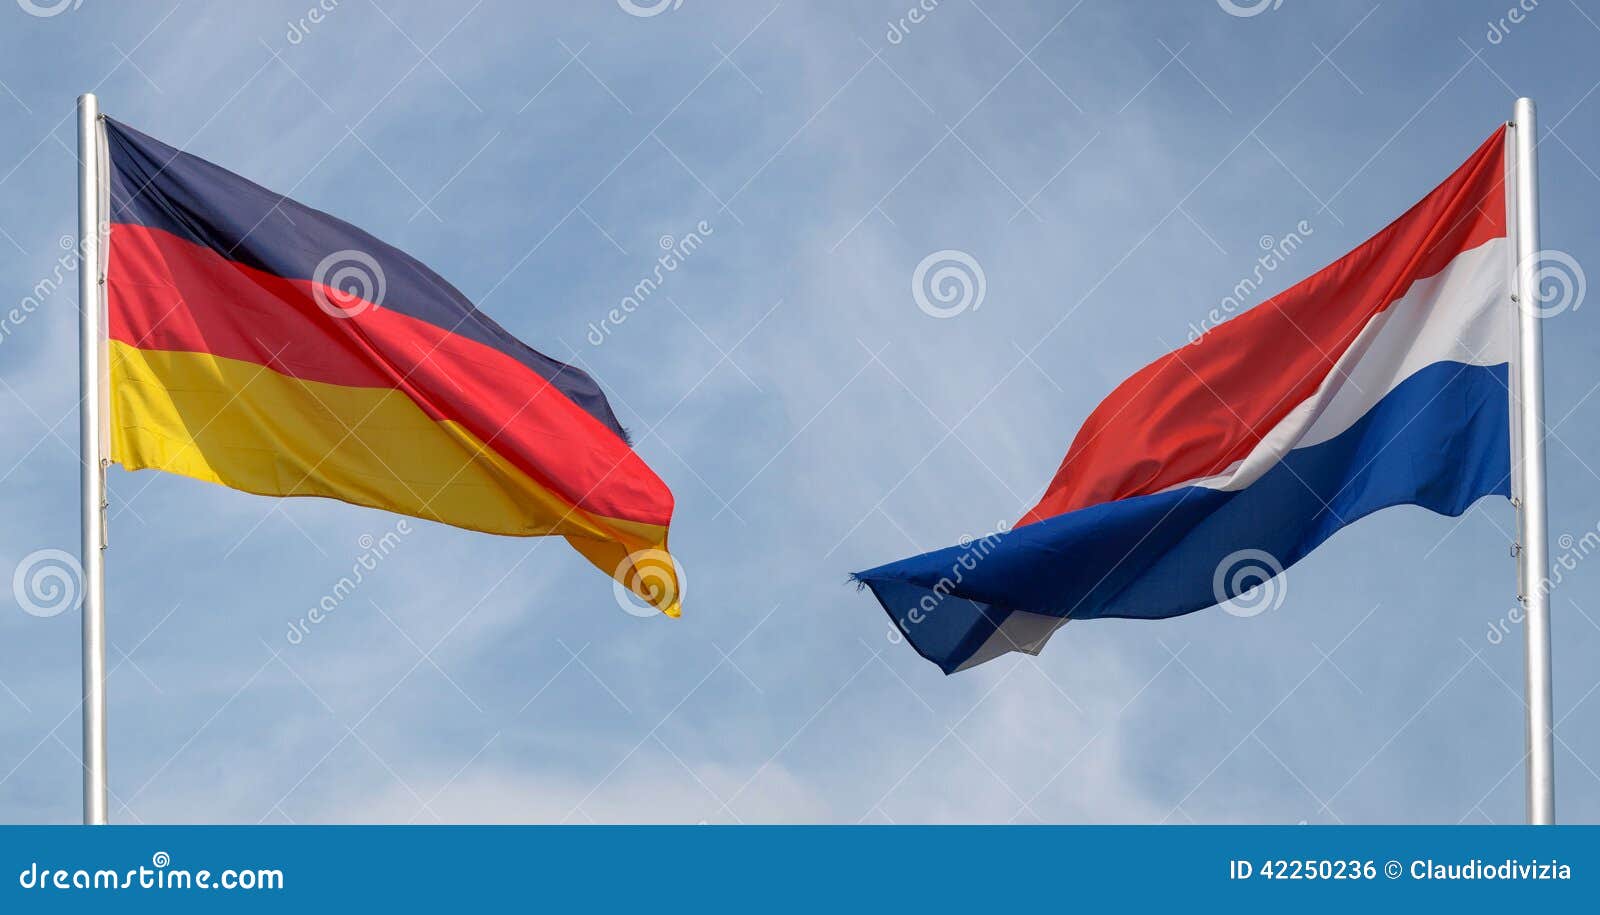 Germany And Netherlands Flag Stock Photo - Image of world, europe: 42250236